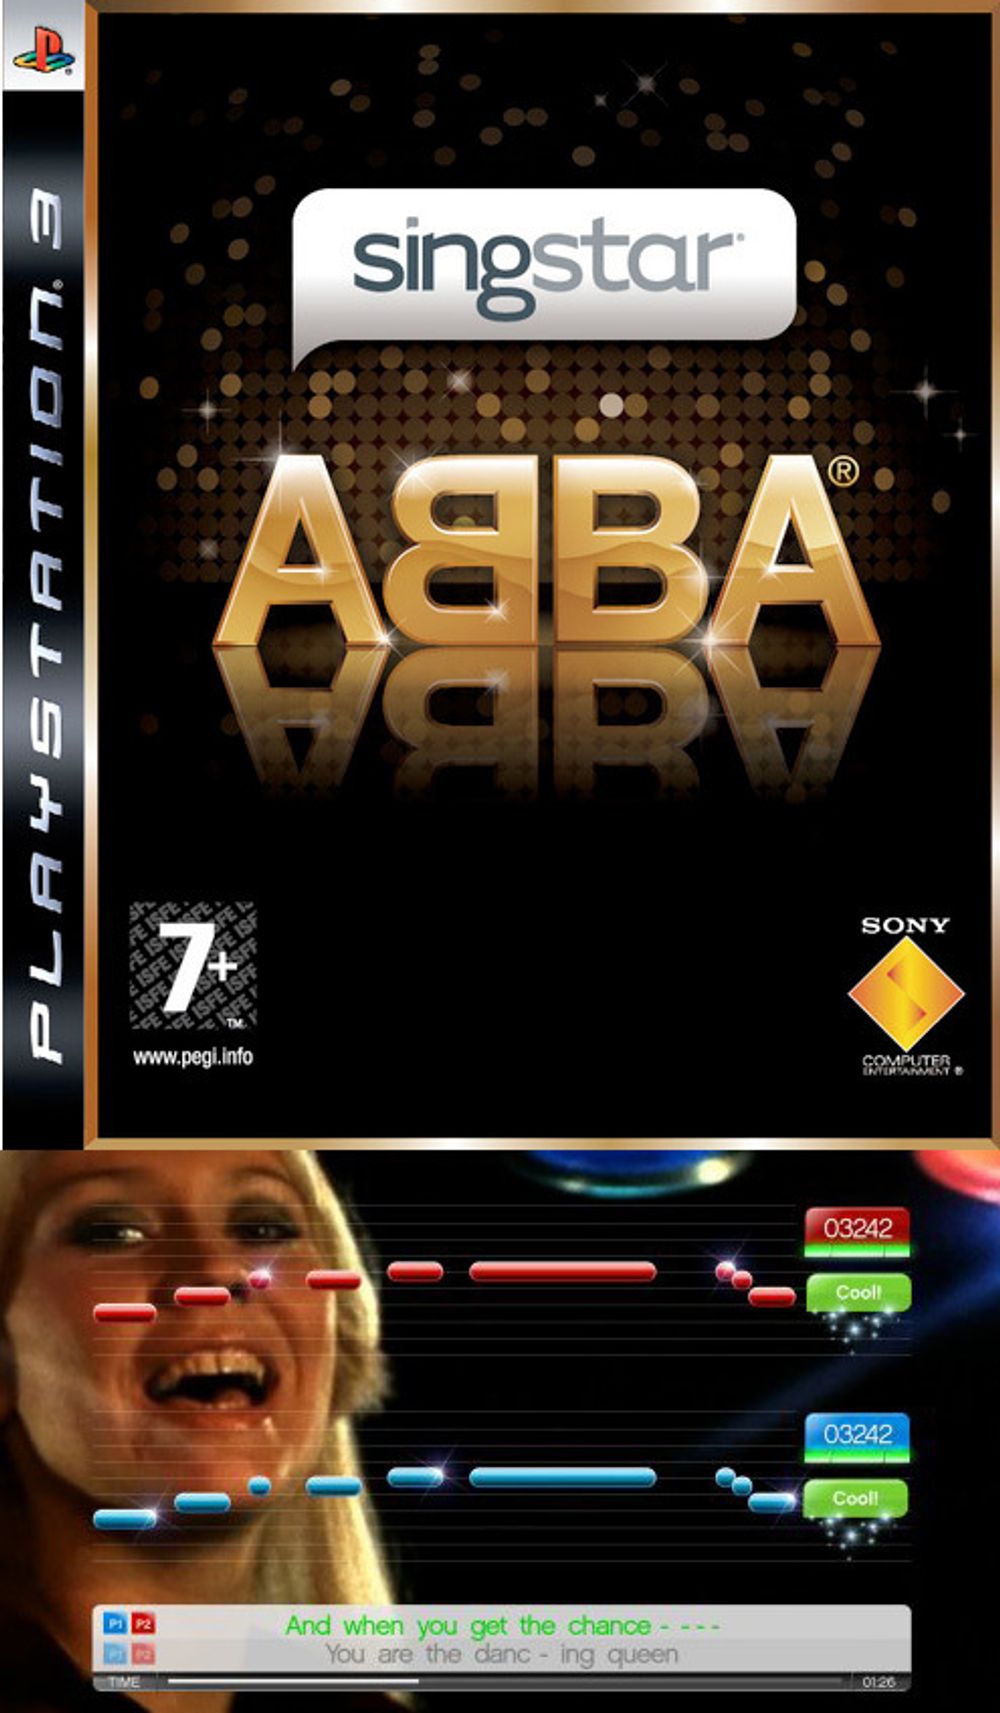 SINGSTAR ABBA: Filmmusikalen Mamma Mia har igjen brakt ABBA tilbake i rampelyset, og snart kommer også en Singstar-versjon med de populære svenskene. Spillet vil ha mellom 20 og 30 låter fra bandets hitrekke, og kommer ikke overraskende til både PS2 og PS3, i god tid før julesalget.